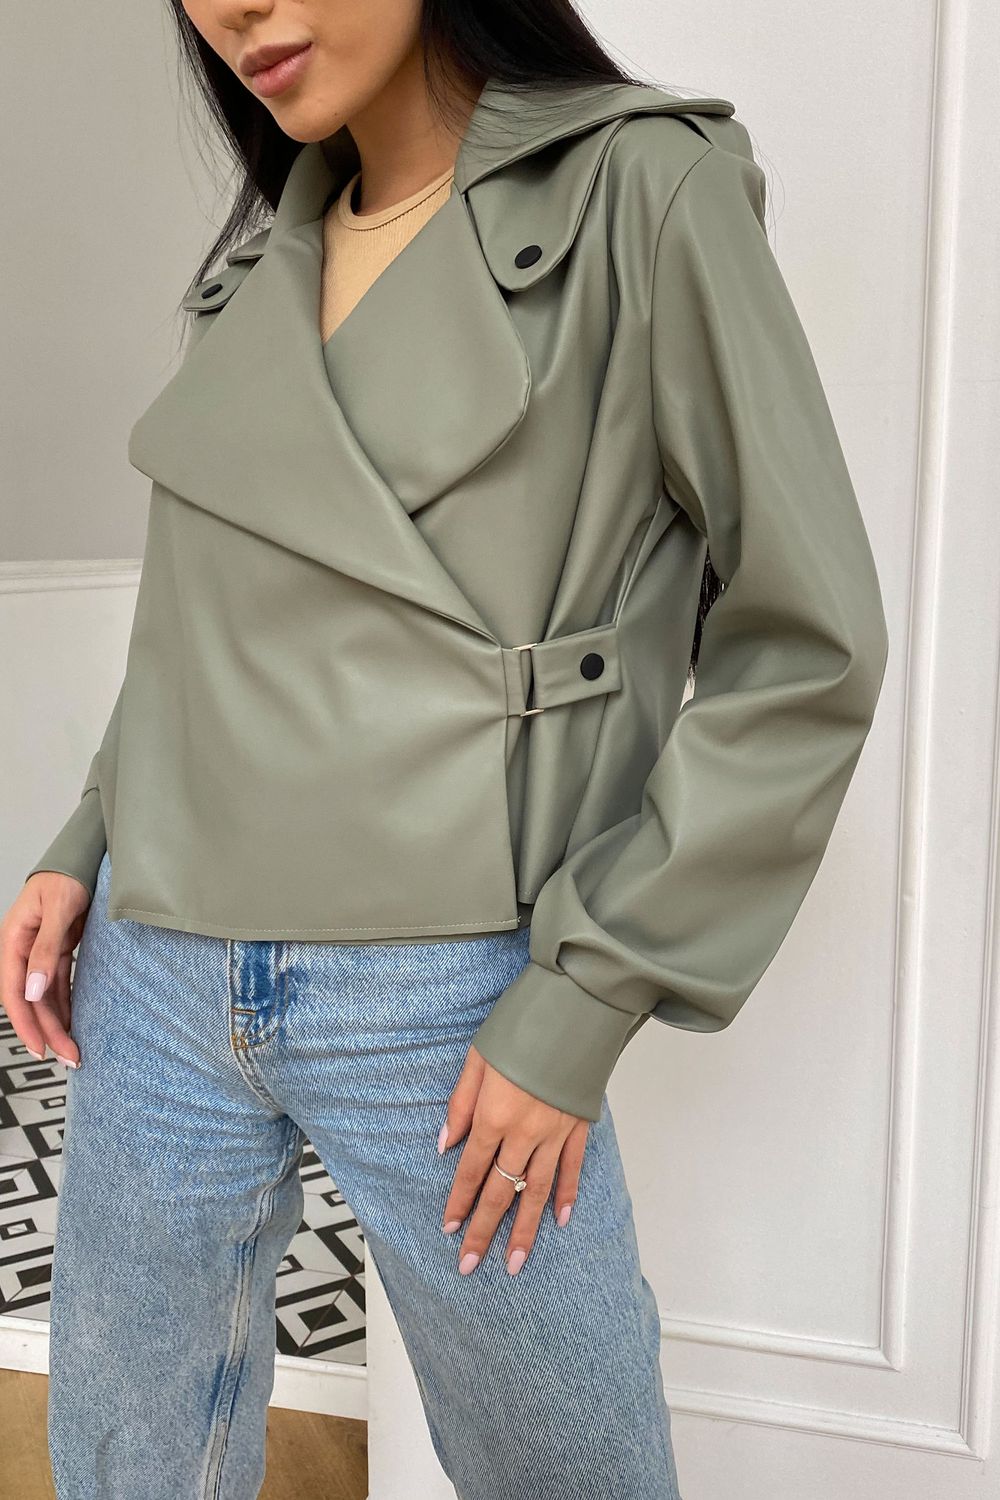 Женская кожаная куртка оливкового цвета - фото